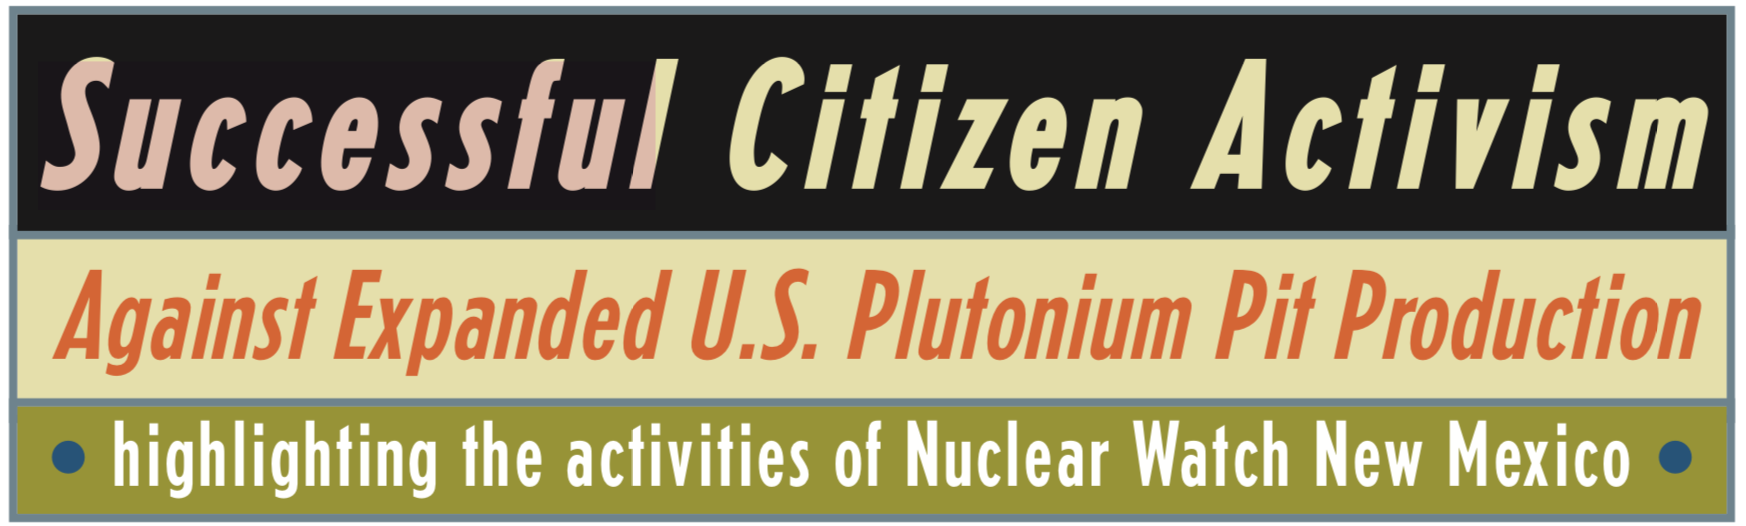 Successful Citizen Activism Agains Expanded U.S. Plutonium Pit Production